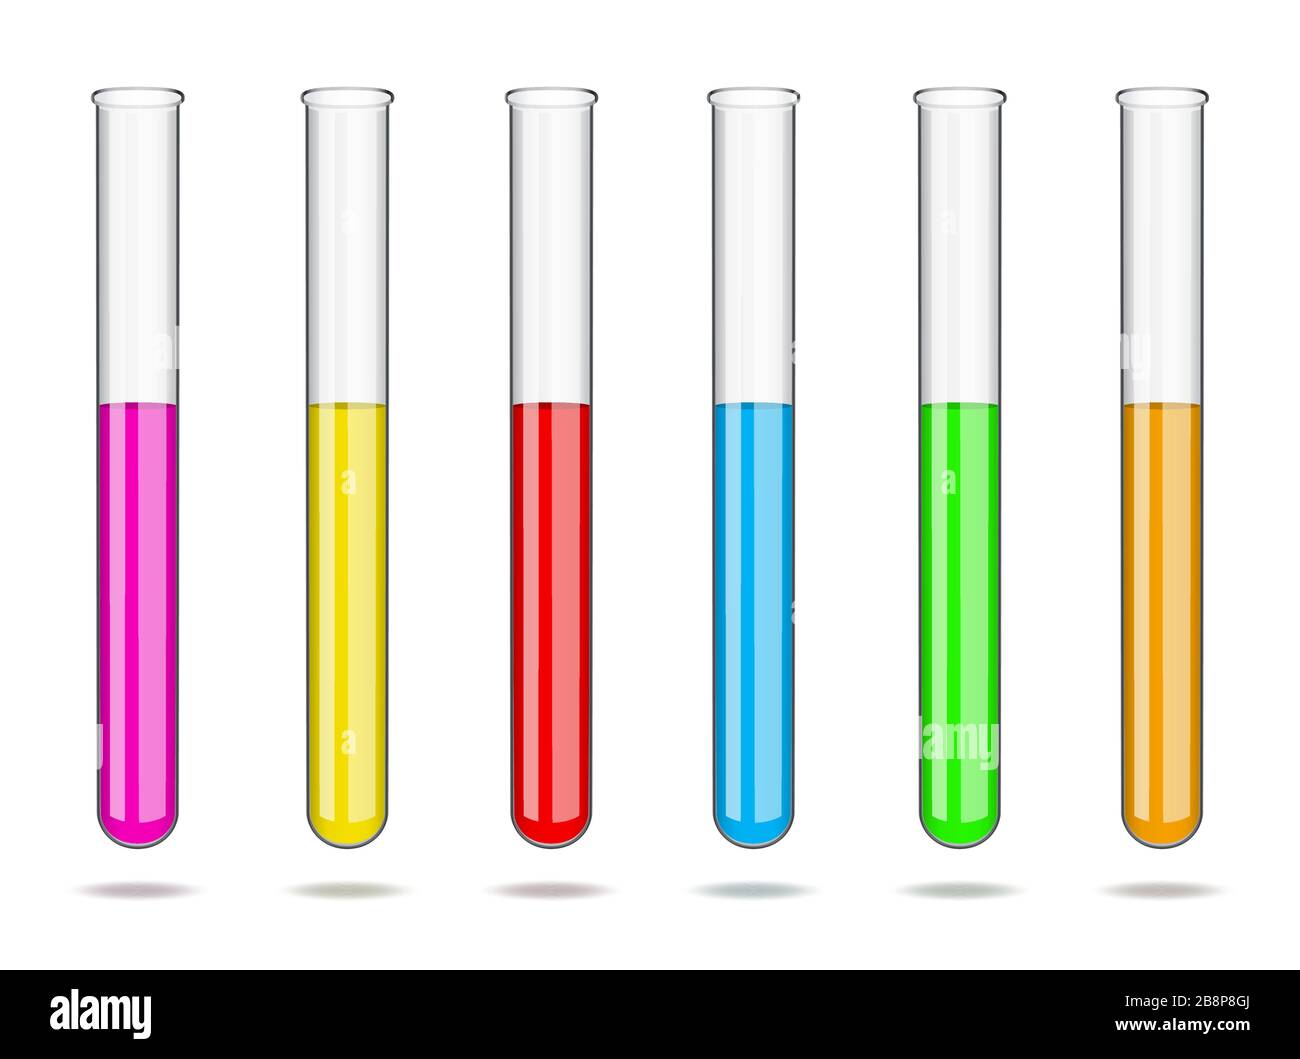 Jeu de tubes à essai en verre de laboratoire avec des liquides de  différentes couleurs. Études de laboratoire en chimie et biologie, analyses  en médecine et Image Vectorielle Stock - Alamy